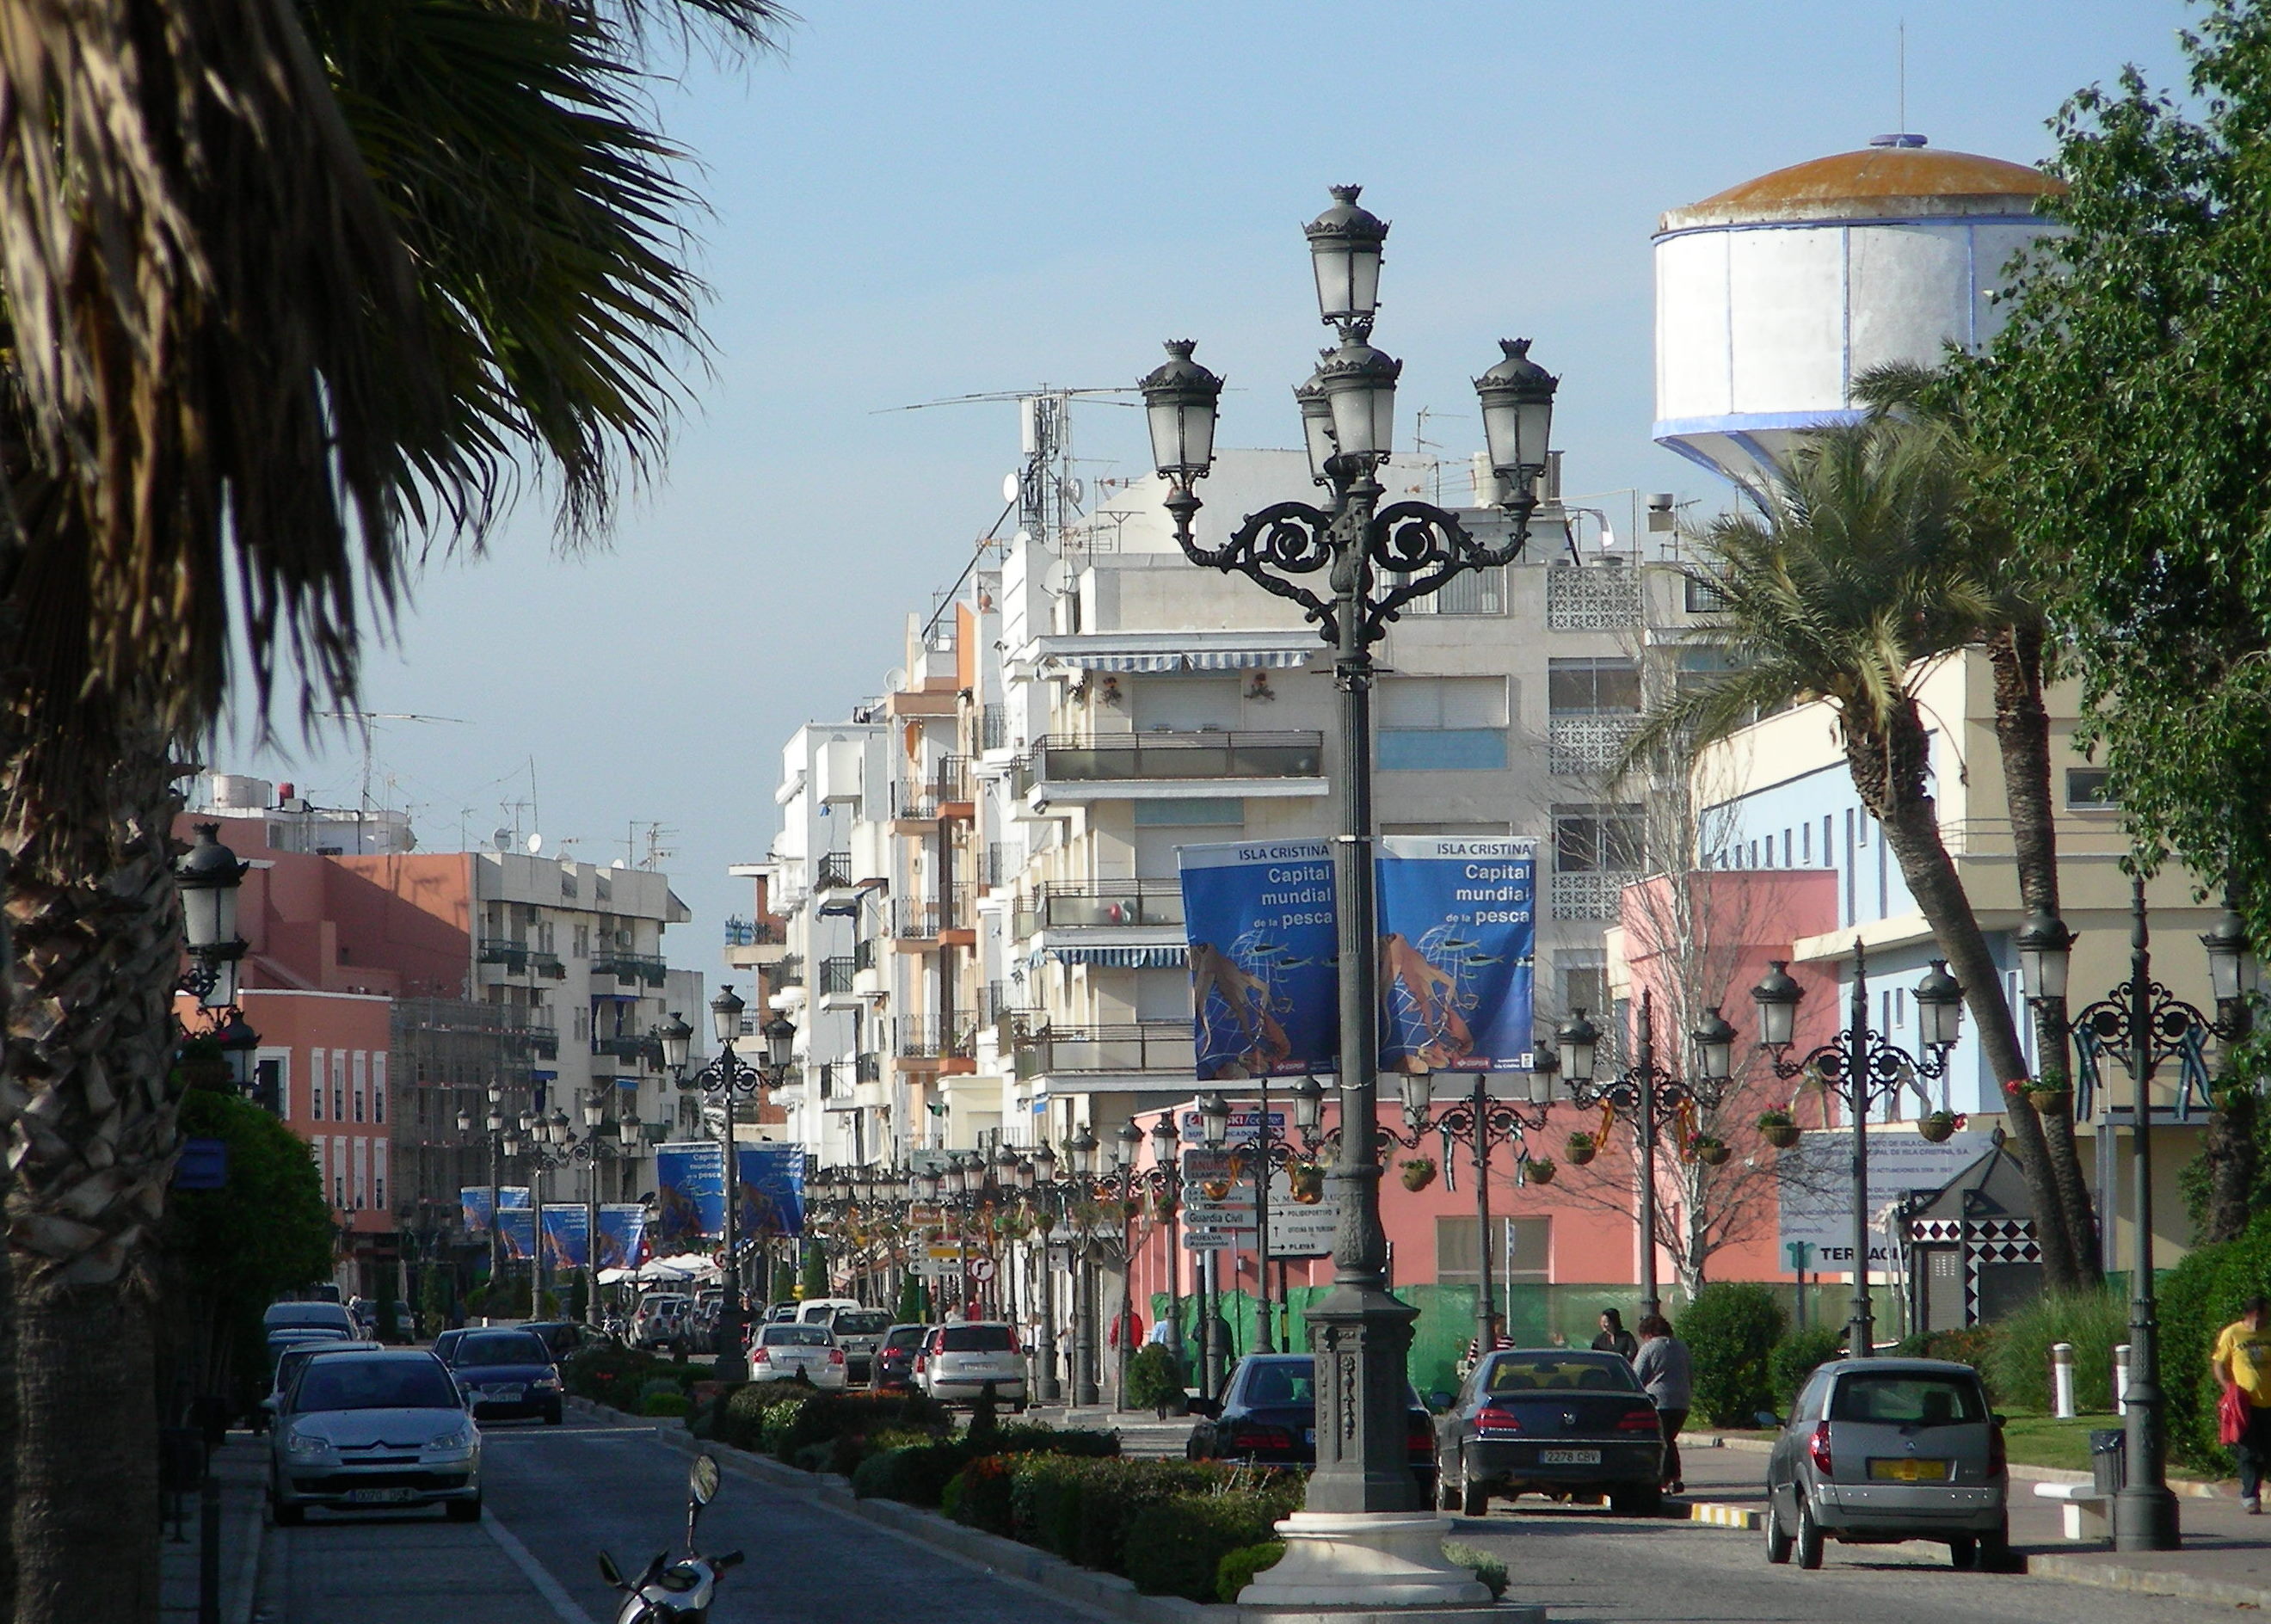 Isla Cristina se une al plan integral de Ecovidrio para incrementar el reciclado de vidrio en verano